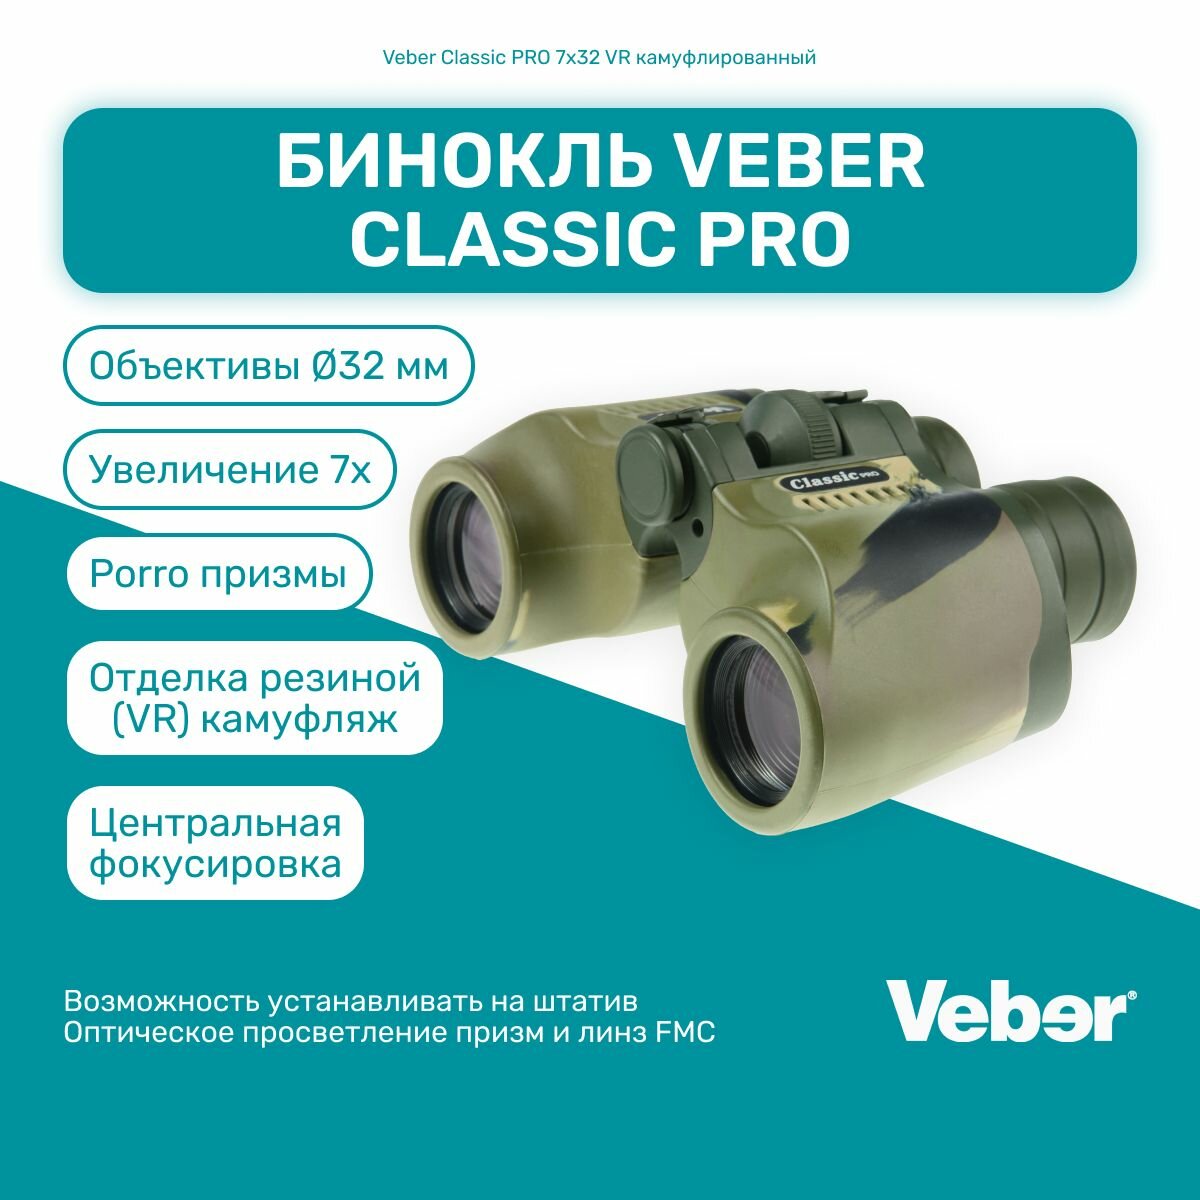 Бинокль Veber Classic PRO 7x32 VR камуфлированный, мощный профессиональный туристический, для активного отдыха, охоты и рыбалки